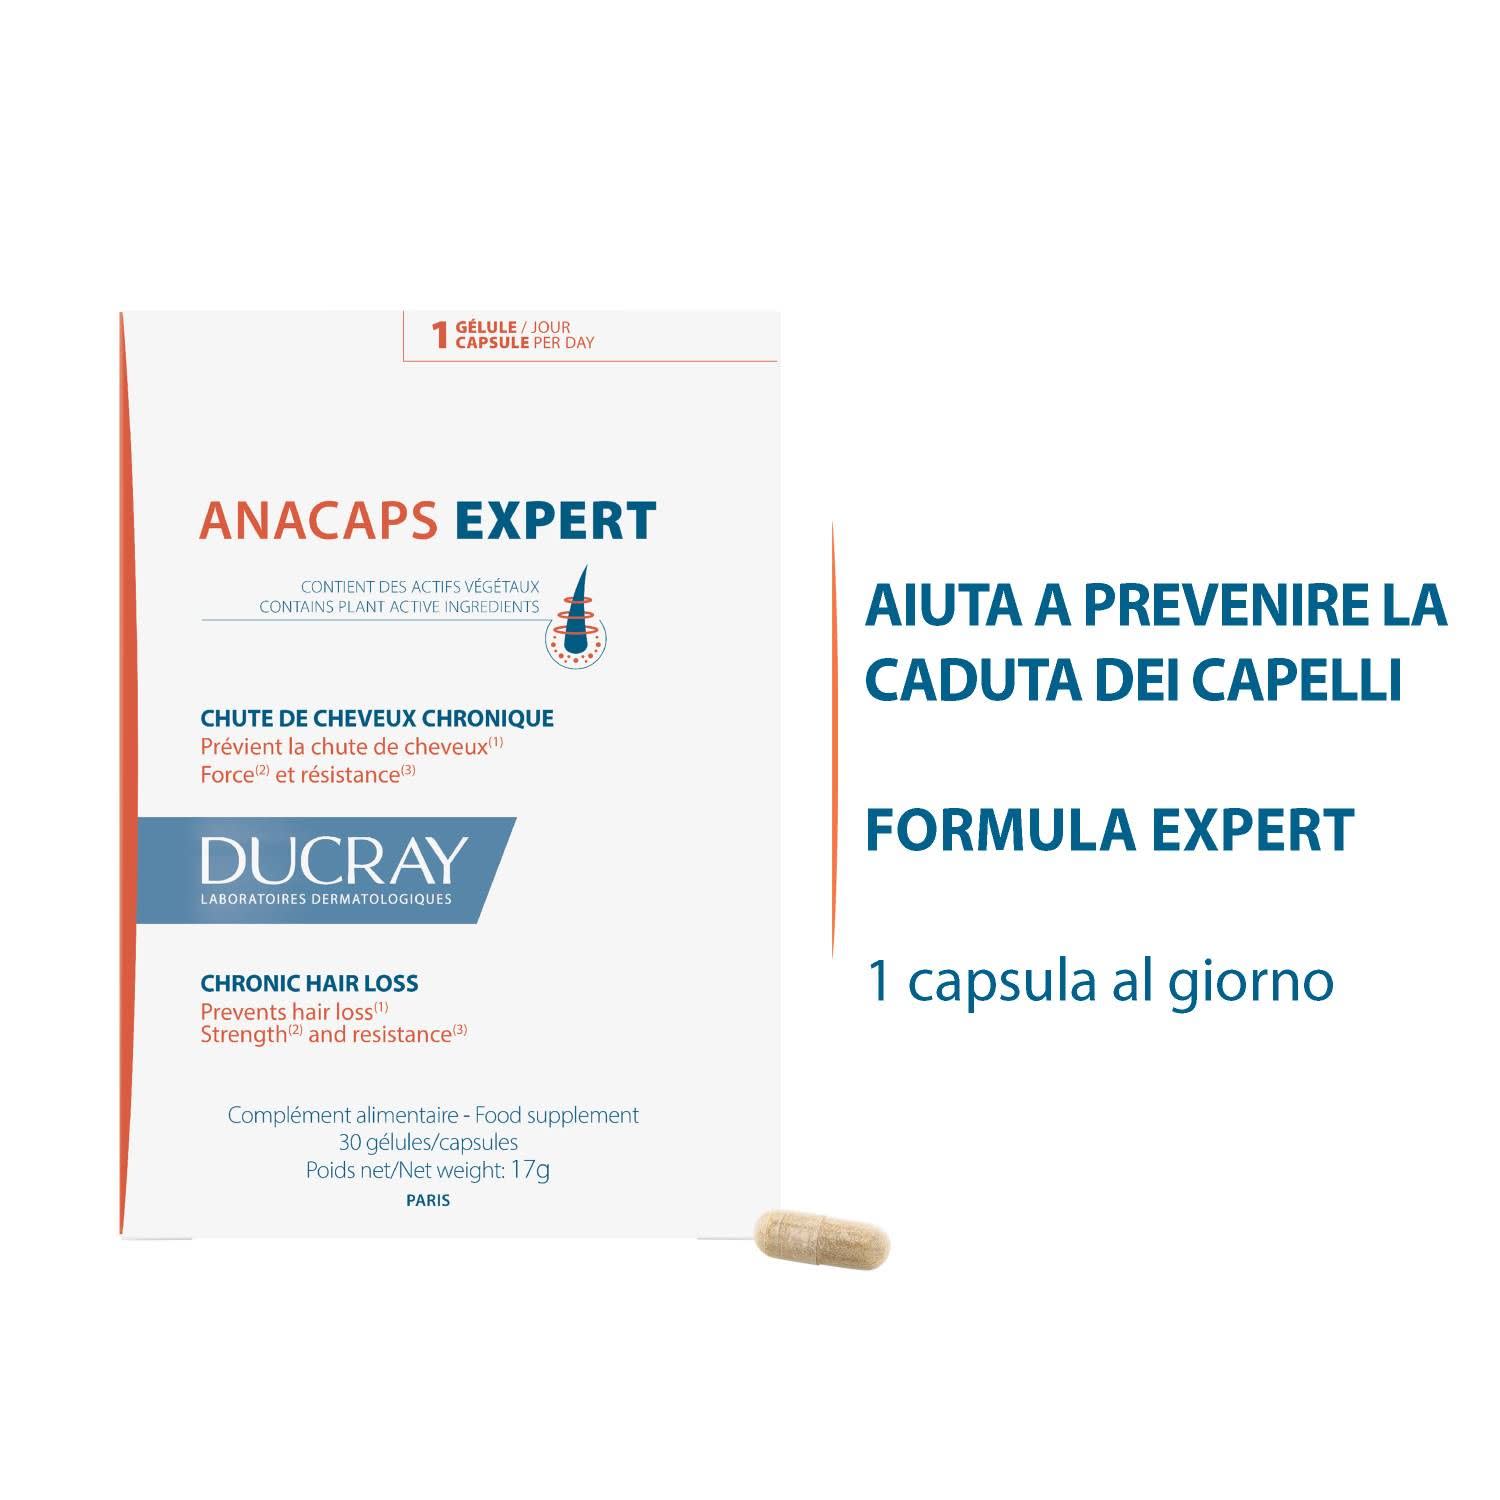 984320022 - Ducray Anacaps Expert Integratore per unghie e capelli 3x30 capsule - 4709755_2.jpg